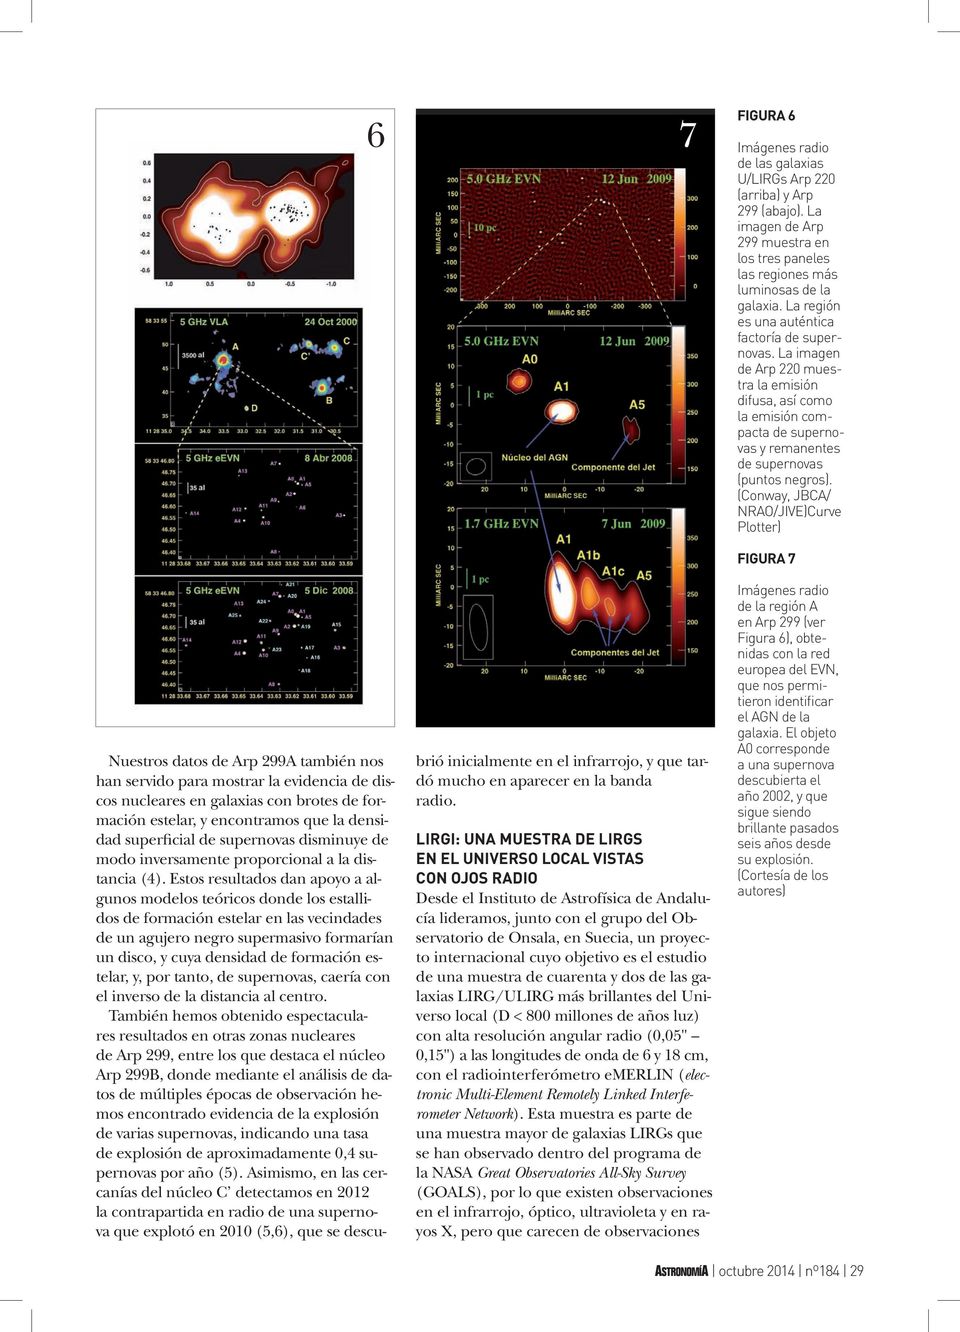 (Conway, JBCA/ NRAO/JIVE)Curve Plotter) Nuestros datos de Arp 299A también nos han servido para mostrar la evidencia de discos nucleares en galaxias con brotes de formación estelar, y encontramos que